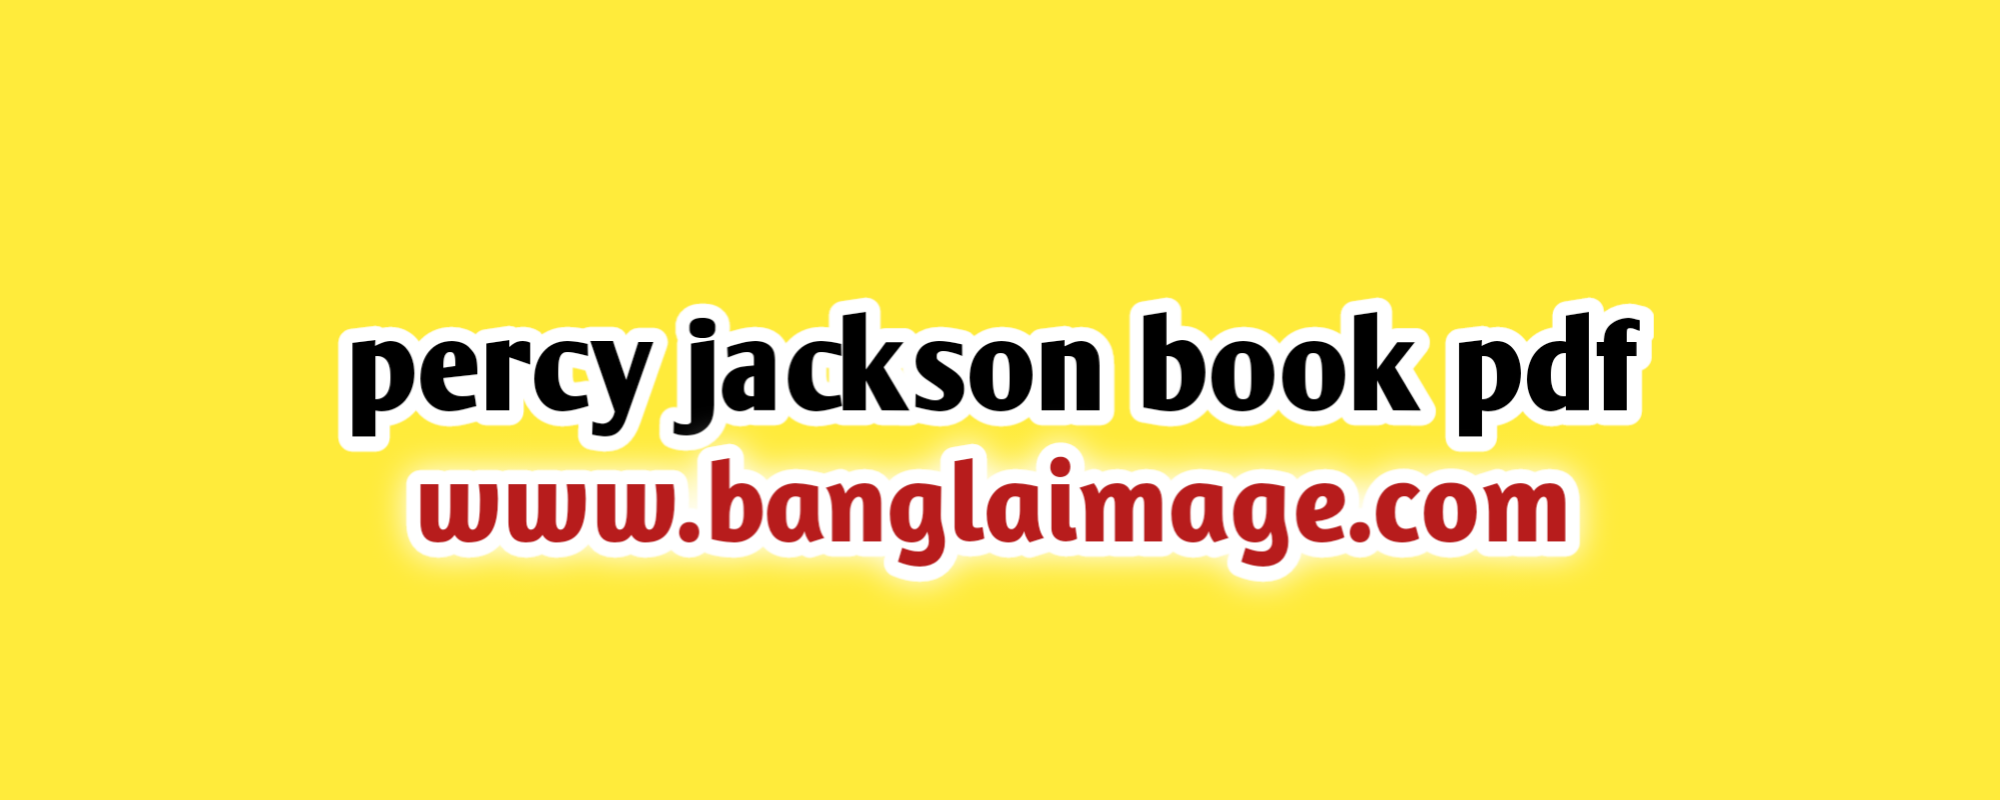 percy jackson book pdf, percy jackson book pdf drive file updated, percy jackson book pdf free download, the percy jackson book pdf drive file updated